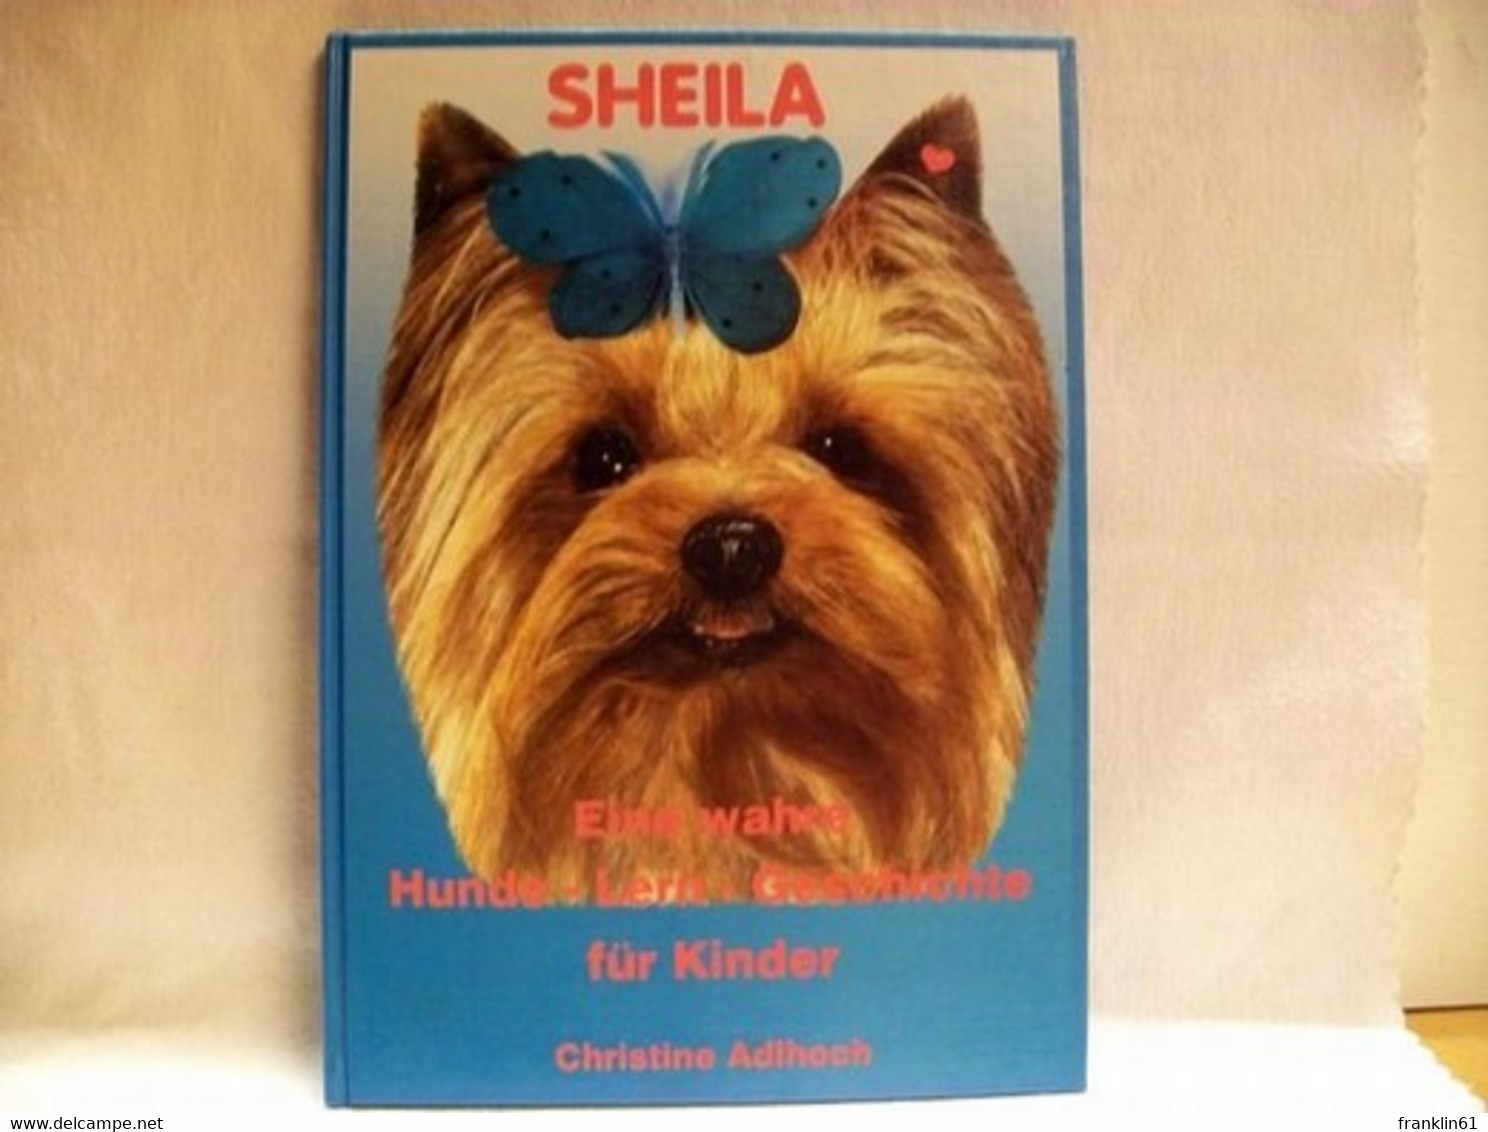 Sheila : Eine Wahre Hunde-Lern-Geschichte Für Kinder - Animals